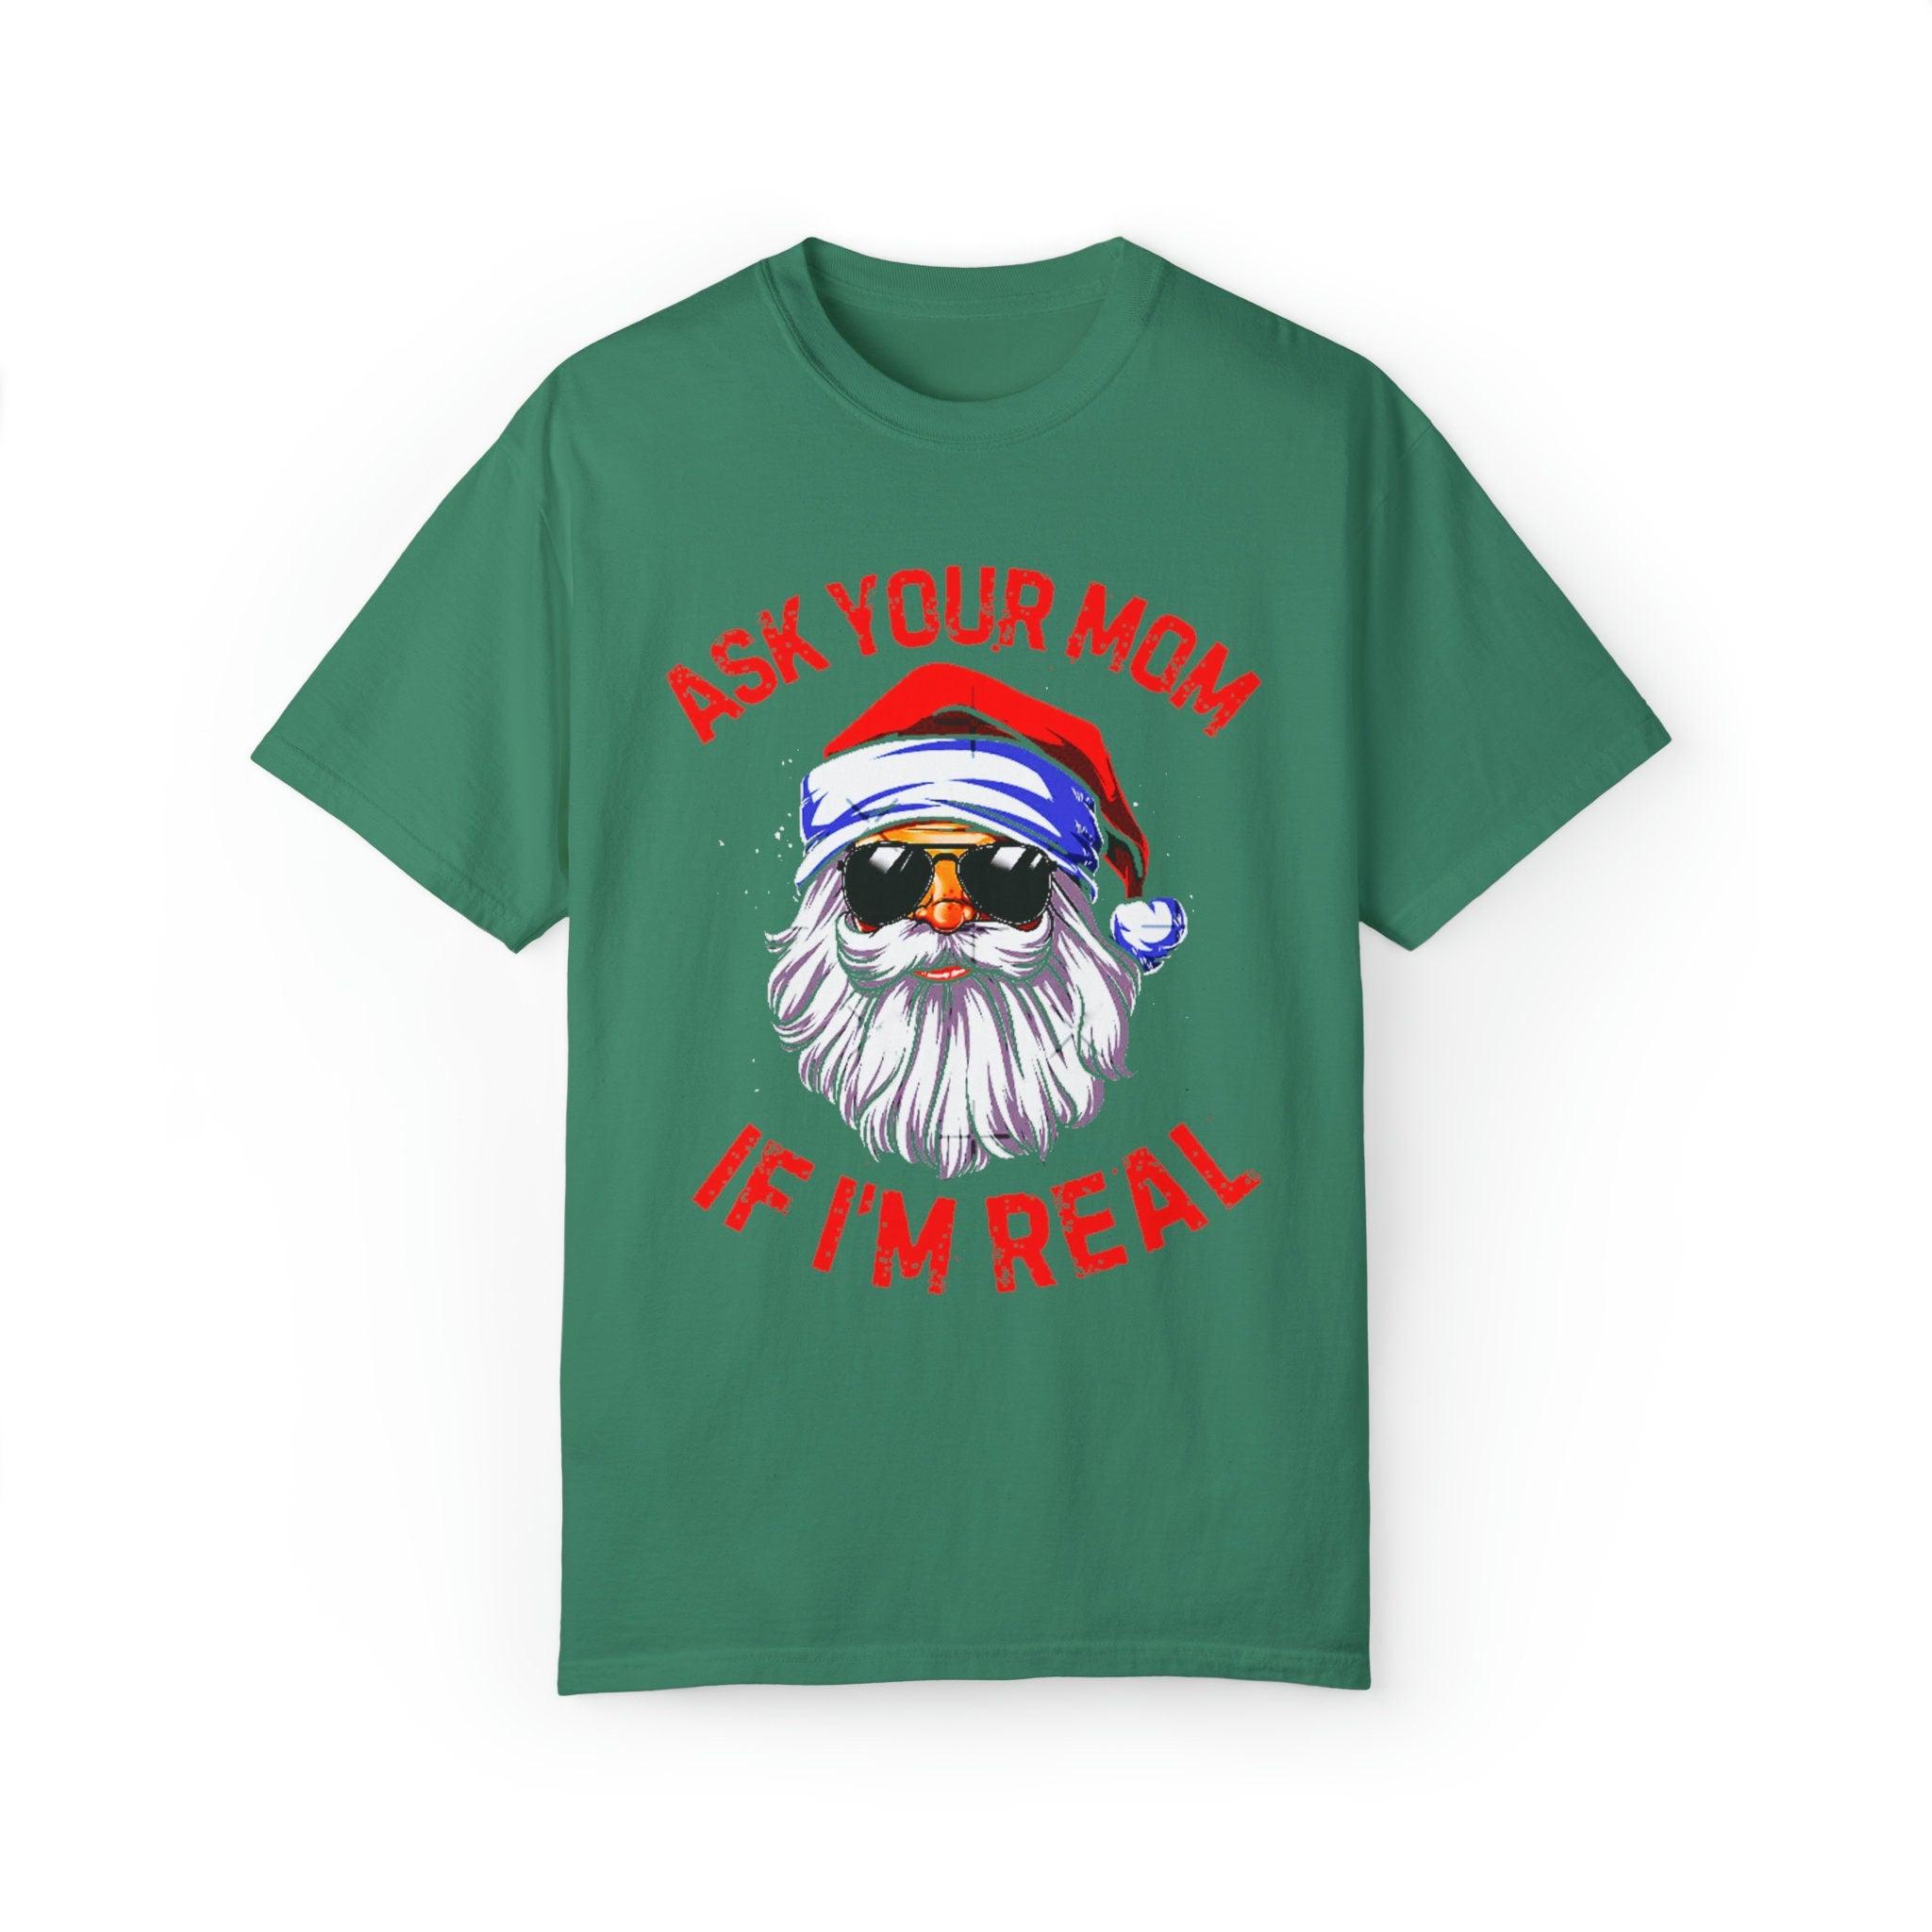 Ρωτήστε τη μαμά σας If I'M T-shirts με πραγματικά χρώματα άνεσης, ο Άγιος Βασίλης είναι αληθινός, χριστουγεννιάτικο δώρο, αστεία Χριστούγεννα Άγιου Βασίλη, Άσχημος χριστουγεννιάτικος γενειοφόρος Άγιος Βασίλης - plusminusco.com